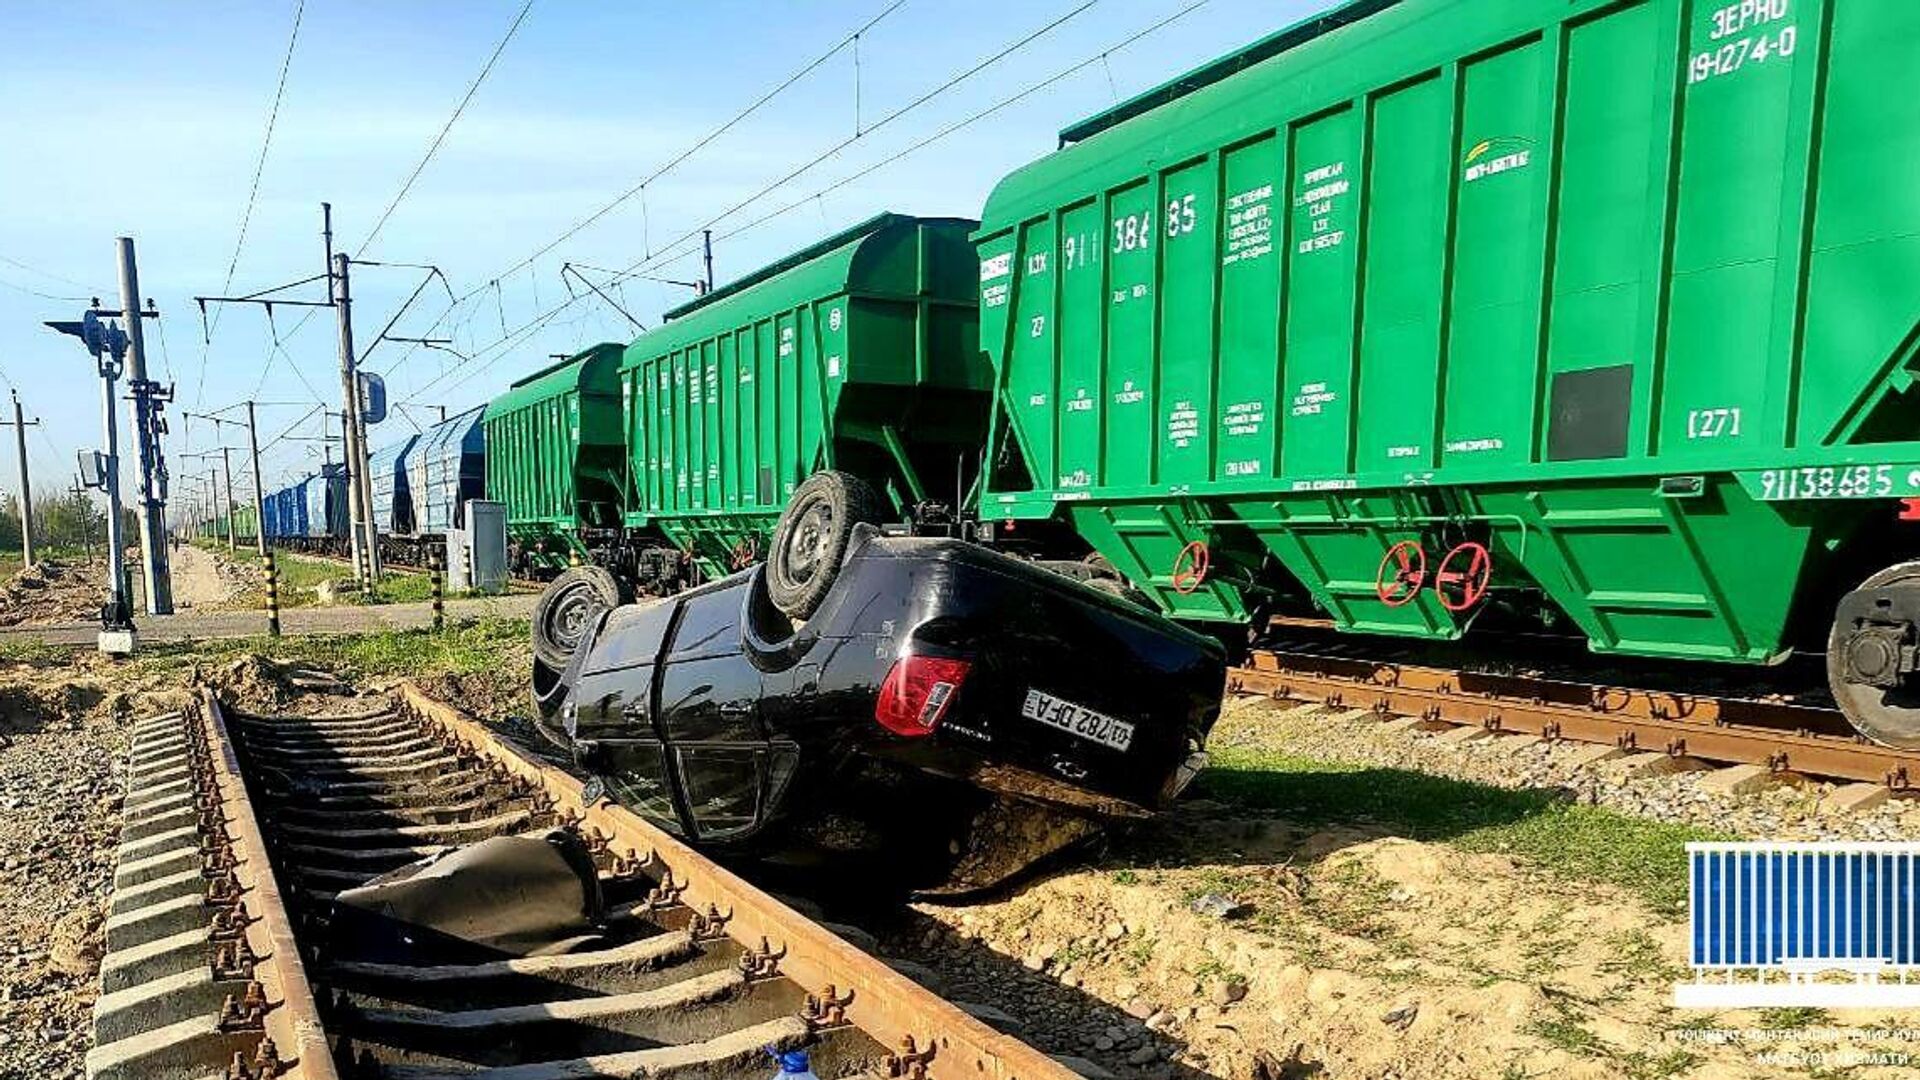 25 апреля в 05.55 в Ташкентской области автомобиль столкнулся с товарным поездом - Sputnik Узбекистан, 1920, 25.04.2021